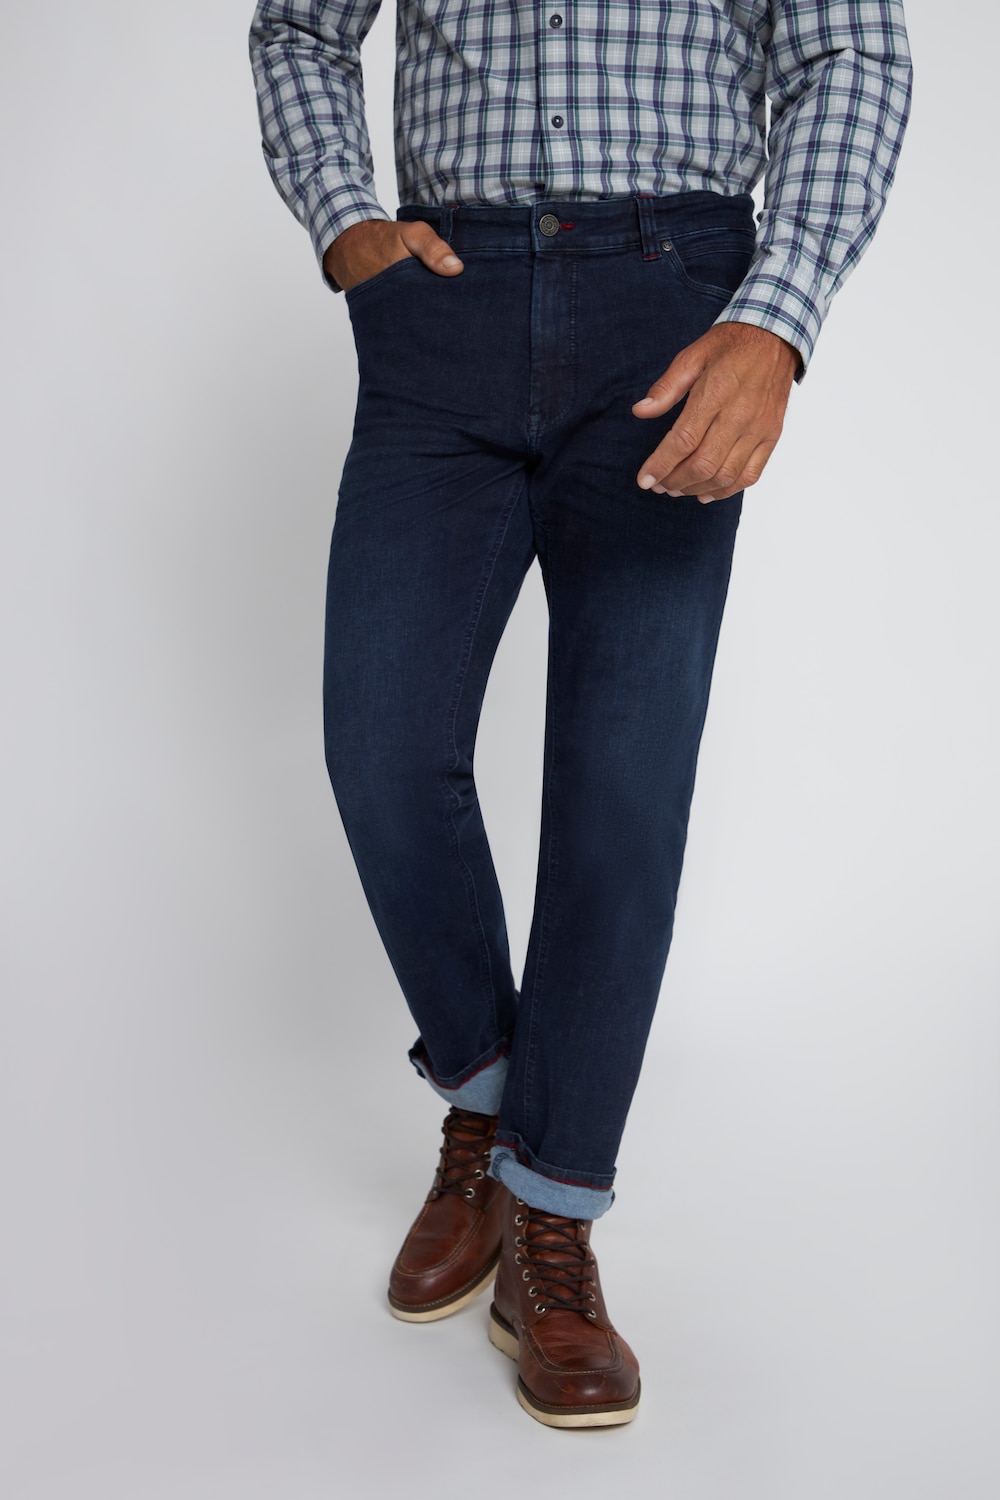 Große Größen Jeans, Herren, blau, Größe: 64, Baumwolle, JP1880 von JP1880